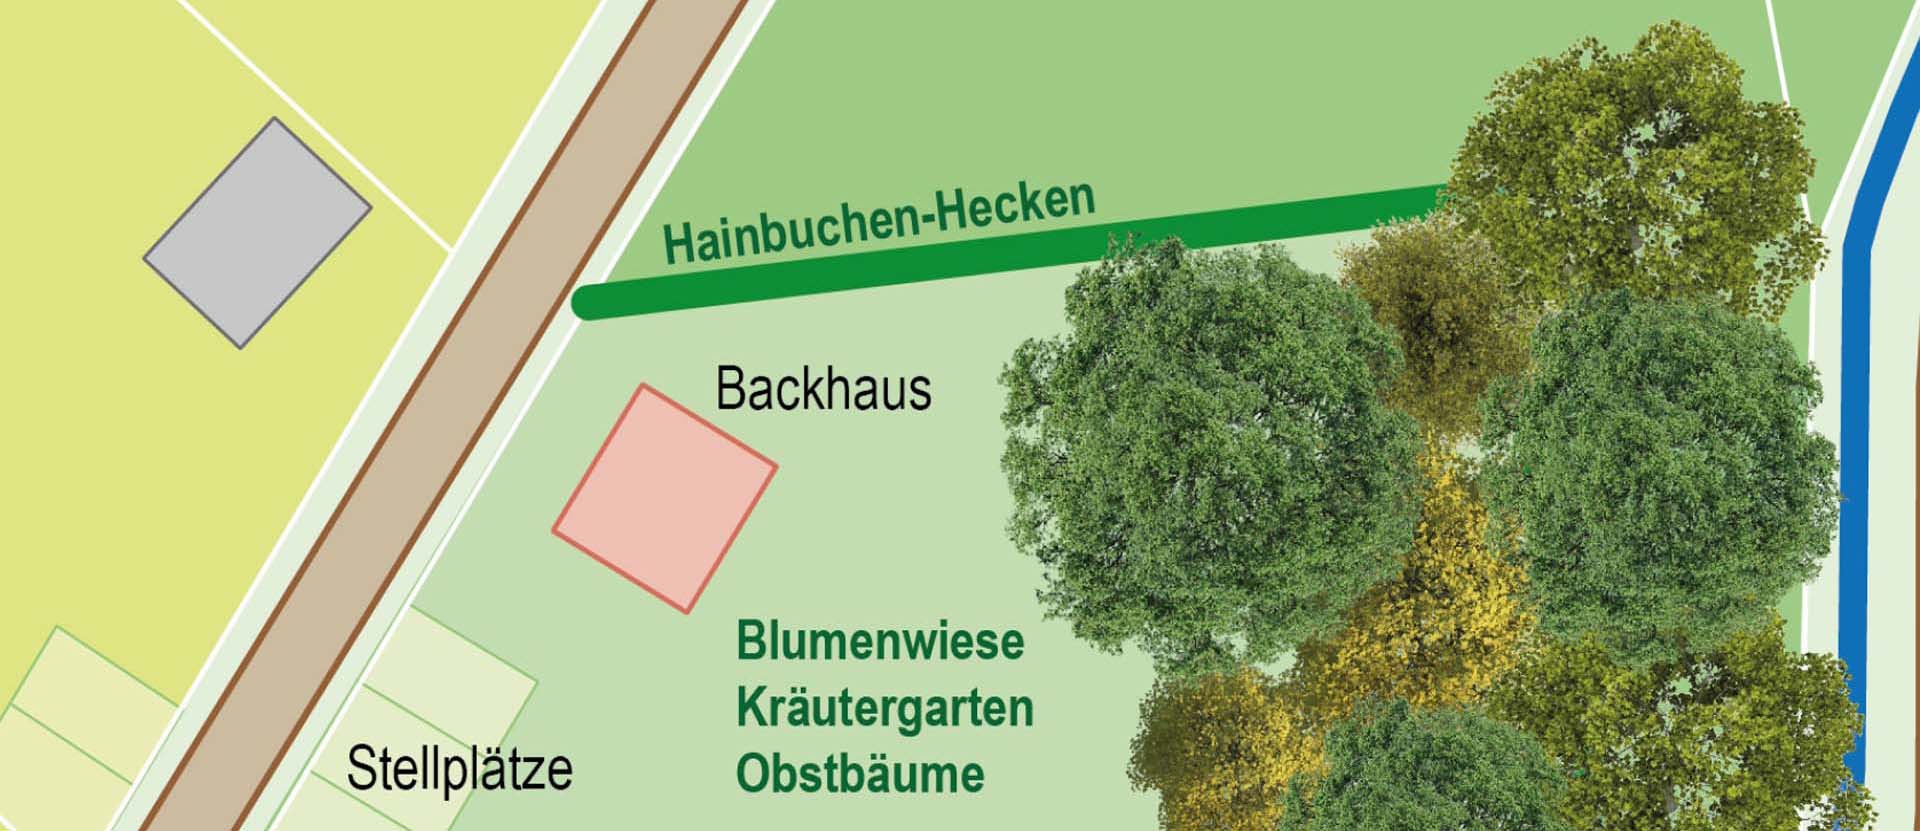 Planung für ein neues Backhaus in Bandorf - Bandorfer Backesverein